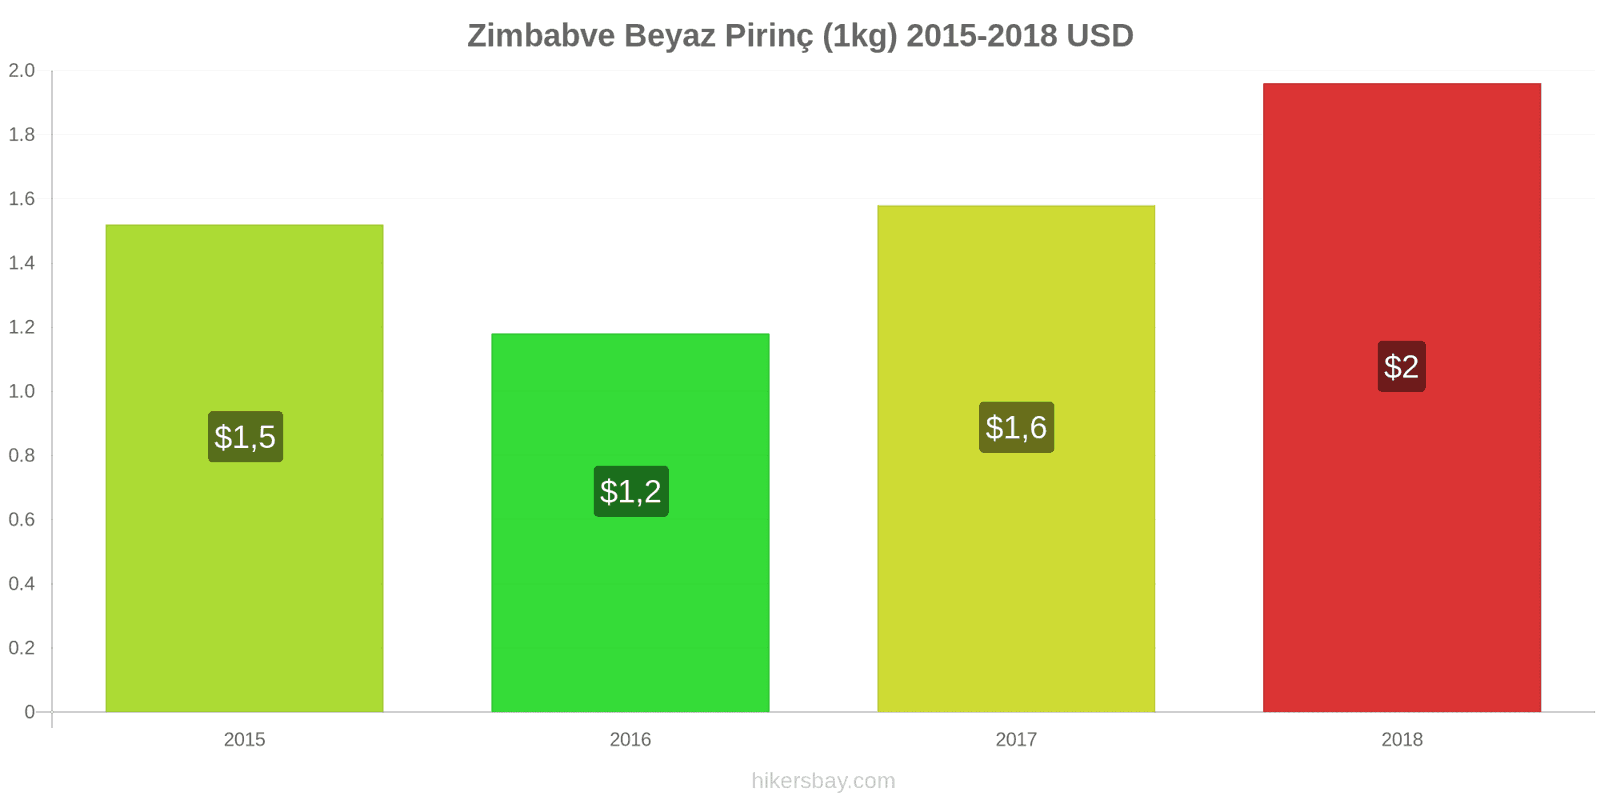 Zimbabve fiyat değişiklikleri Bir kilo beyaz pirinç hikersbay.com